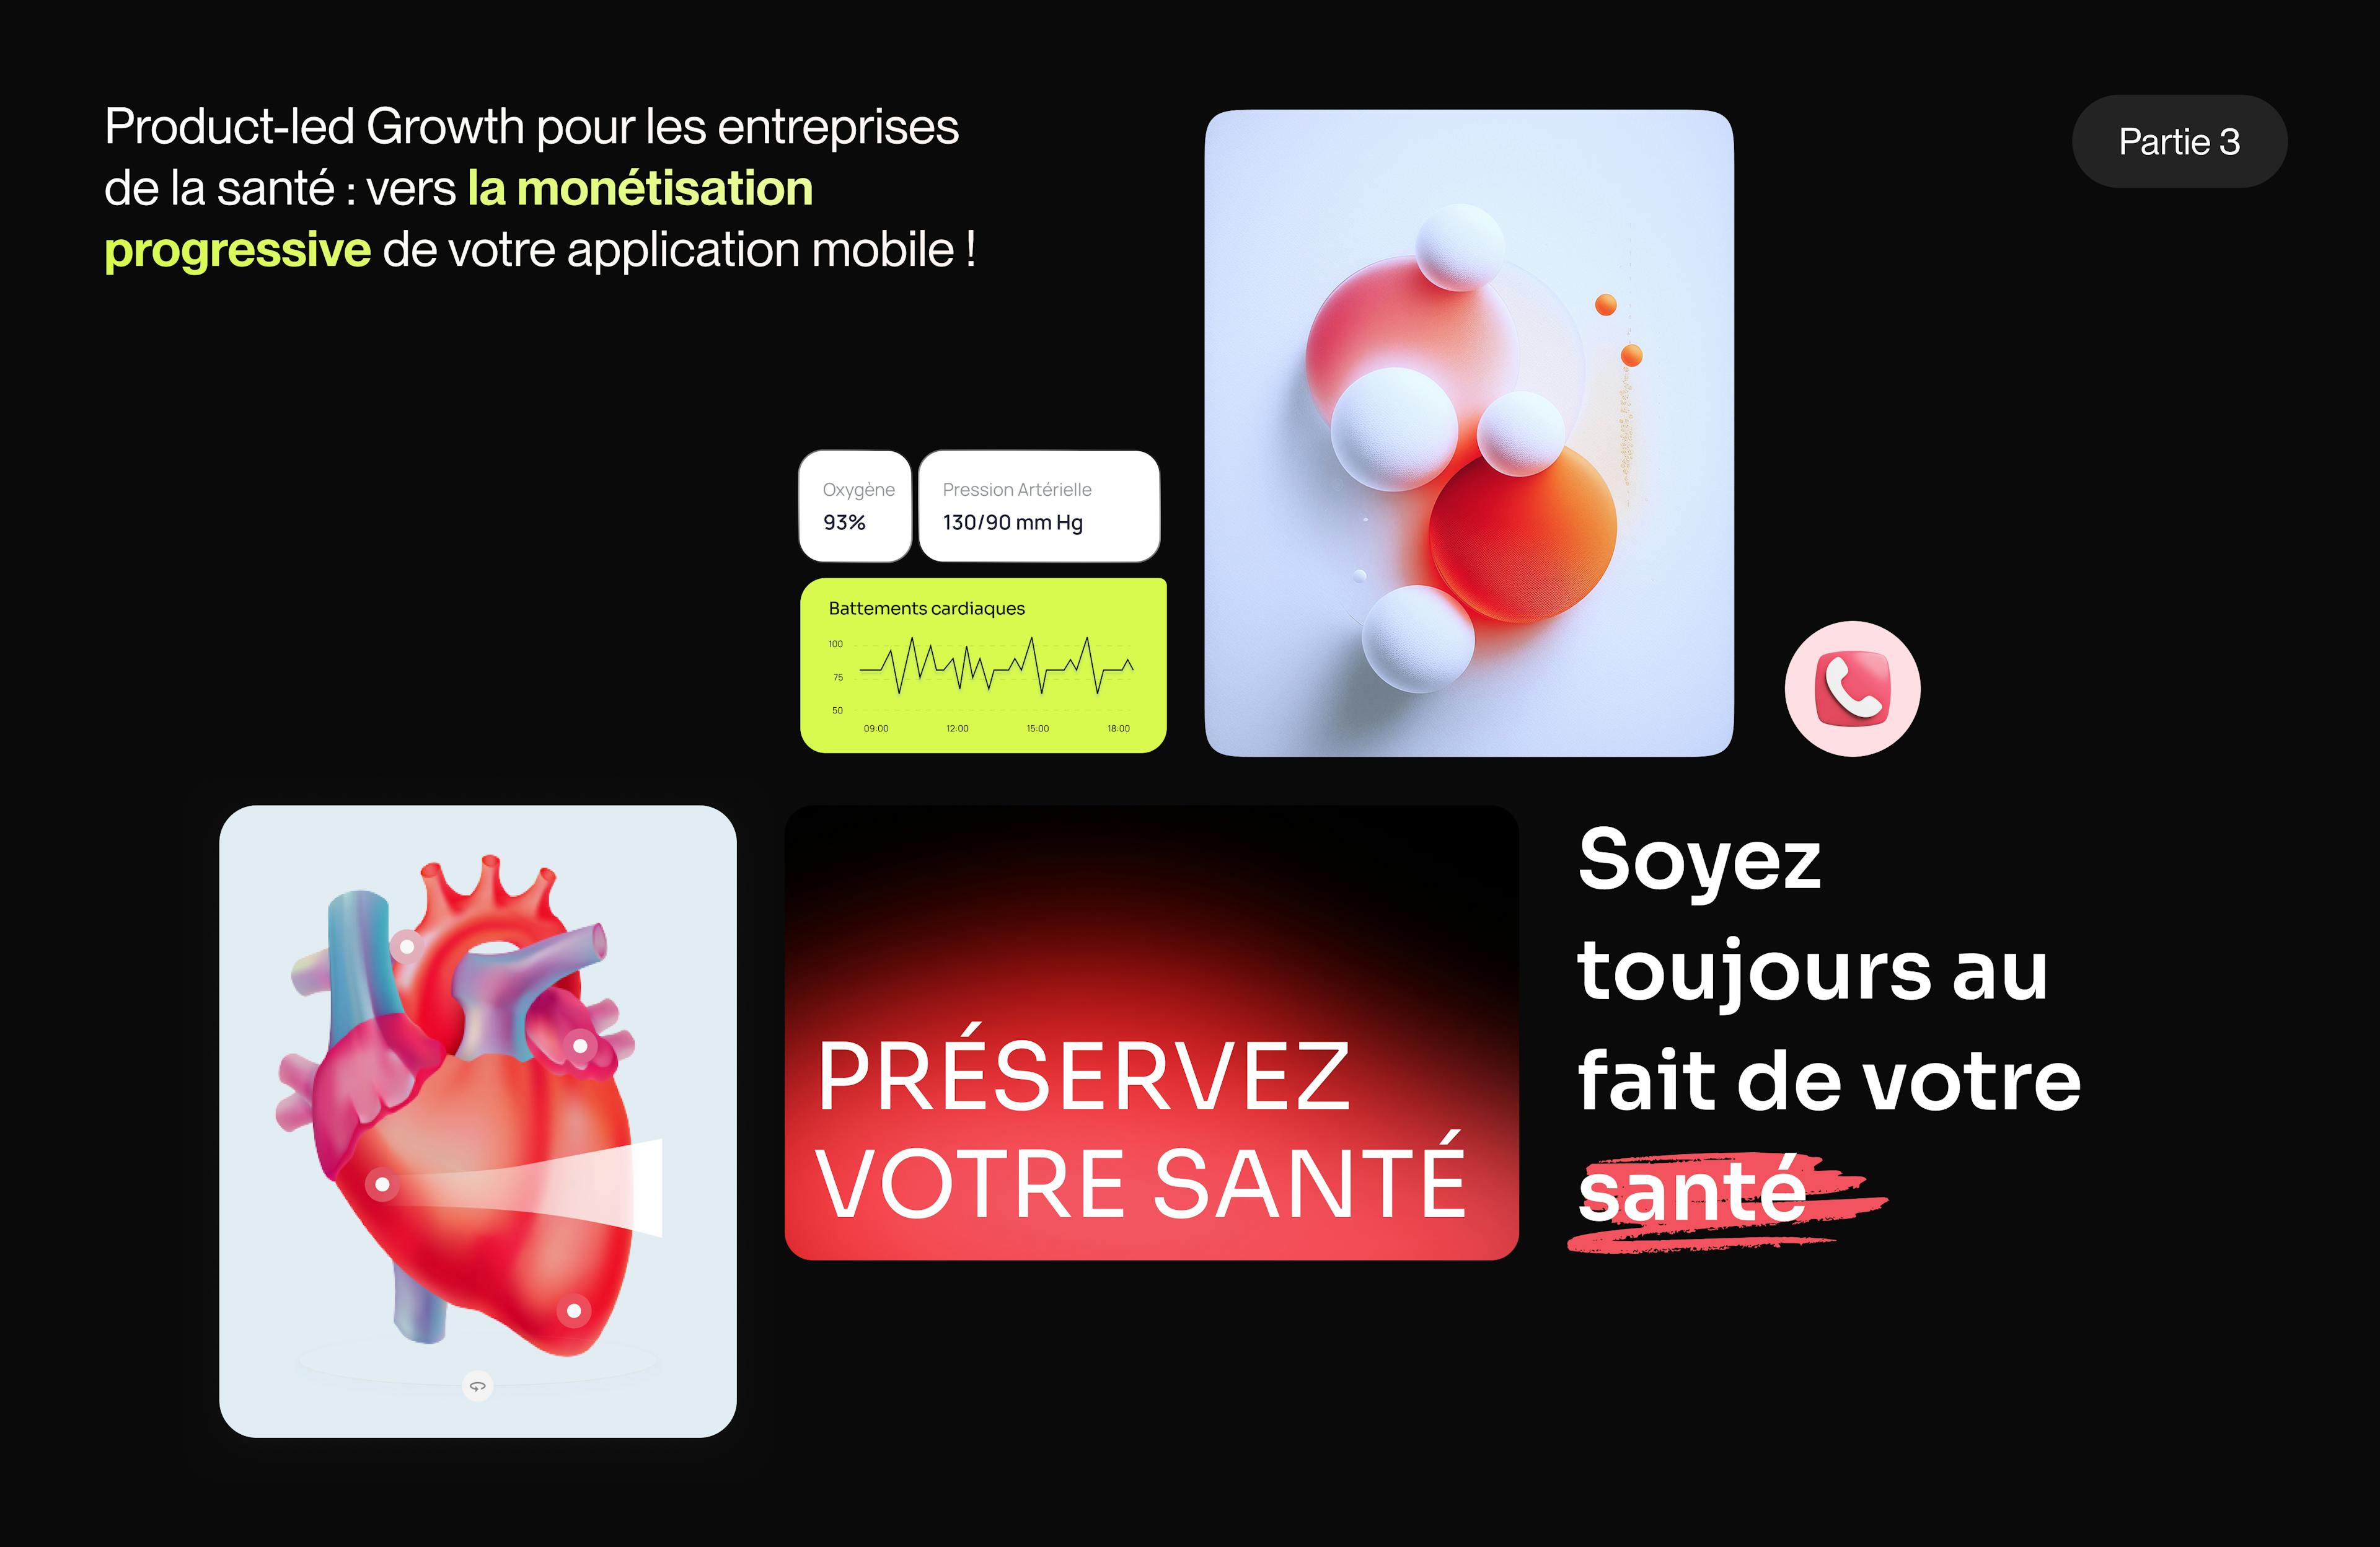 Image de couverture - PLG - santé - monétiser - app mobile